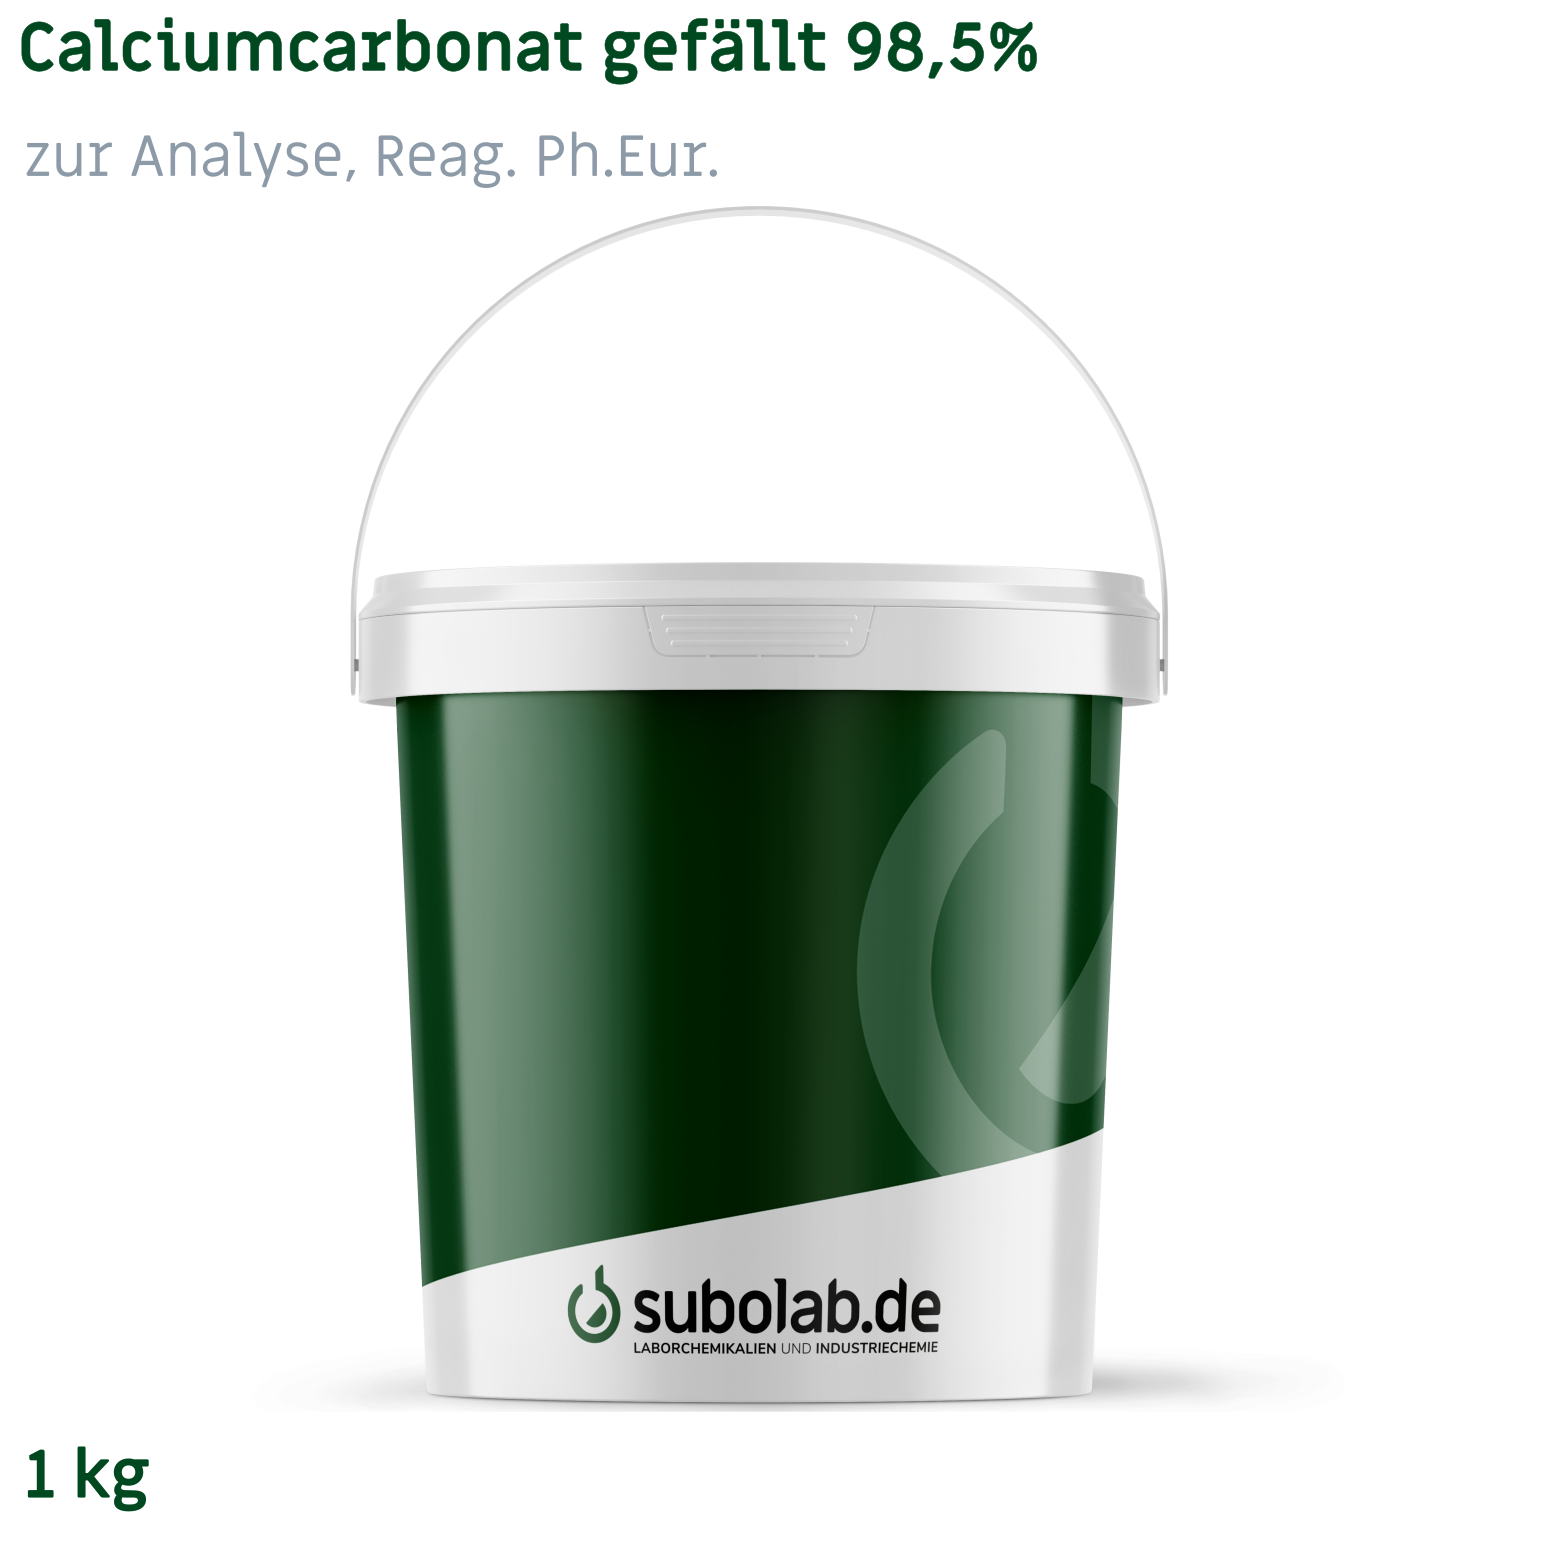 Bild von Calciumcarbonat gefällt 98,5% zur Analyse, Reag. Ph.Eur. (1 kg)